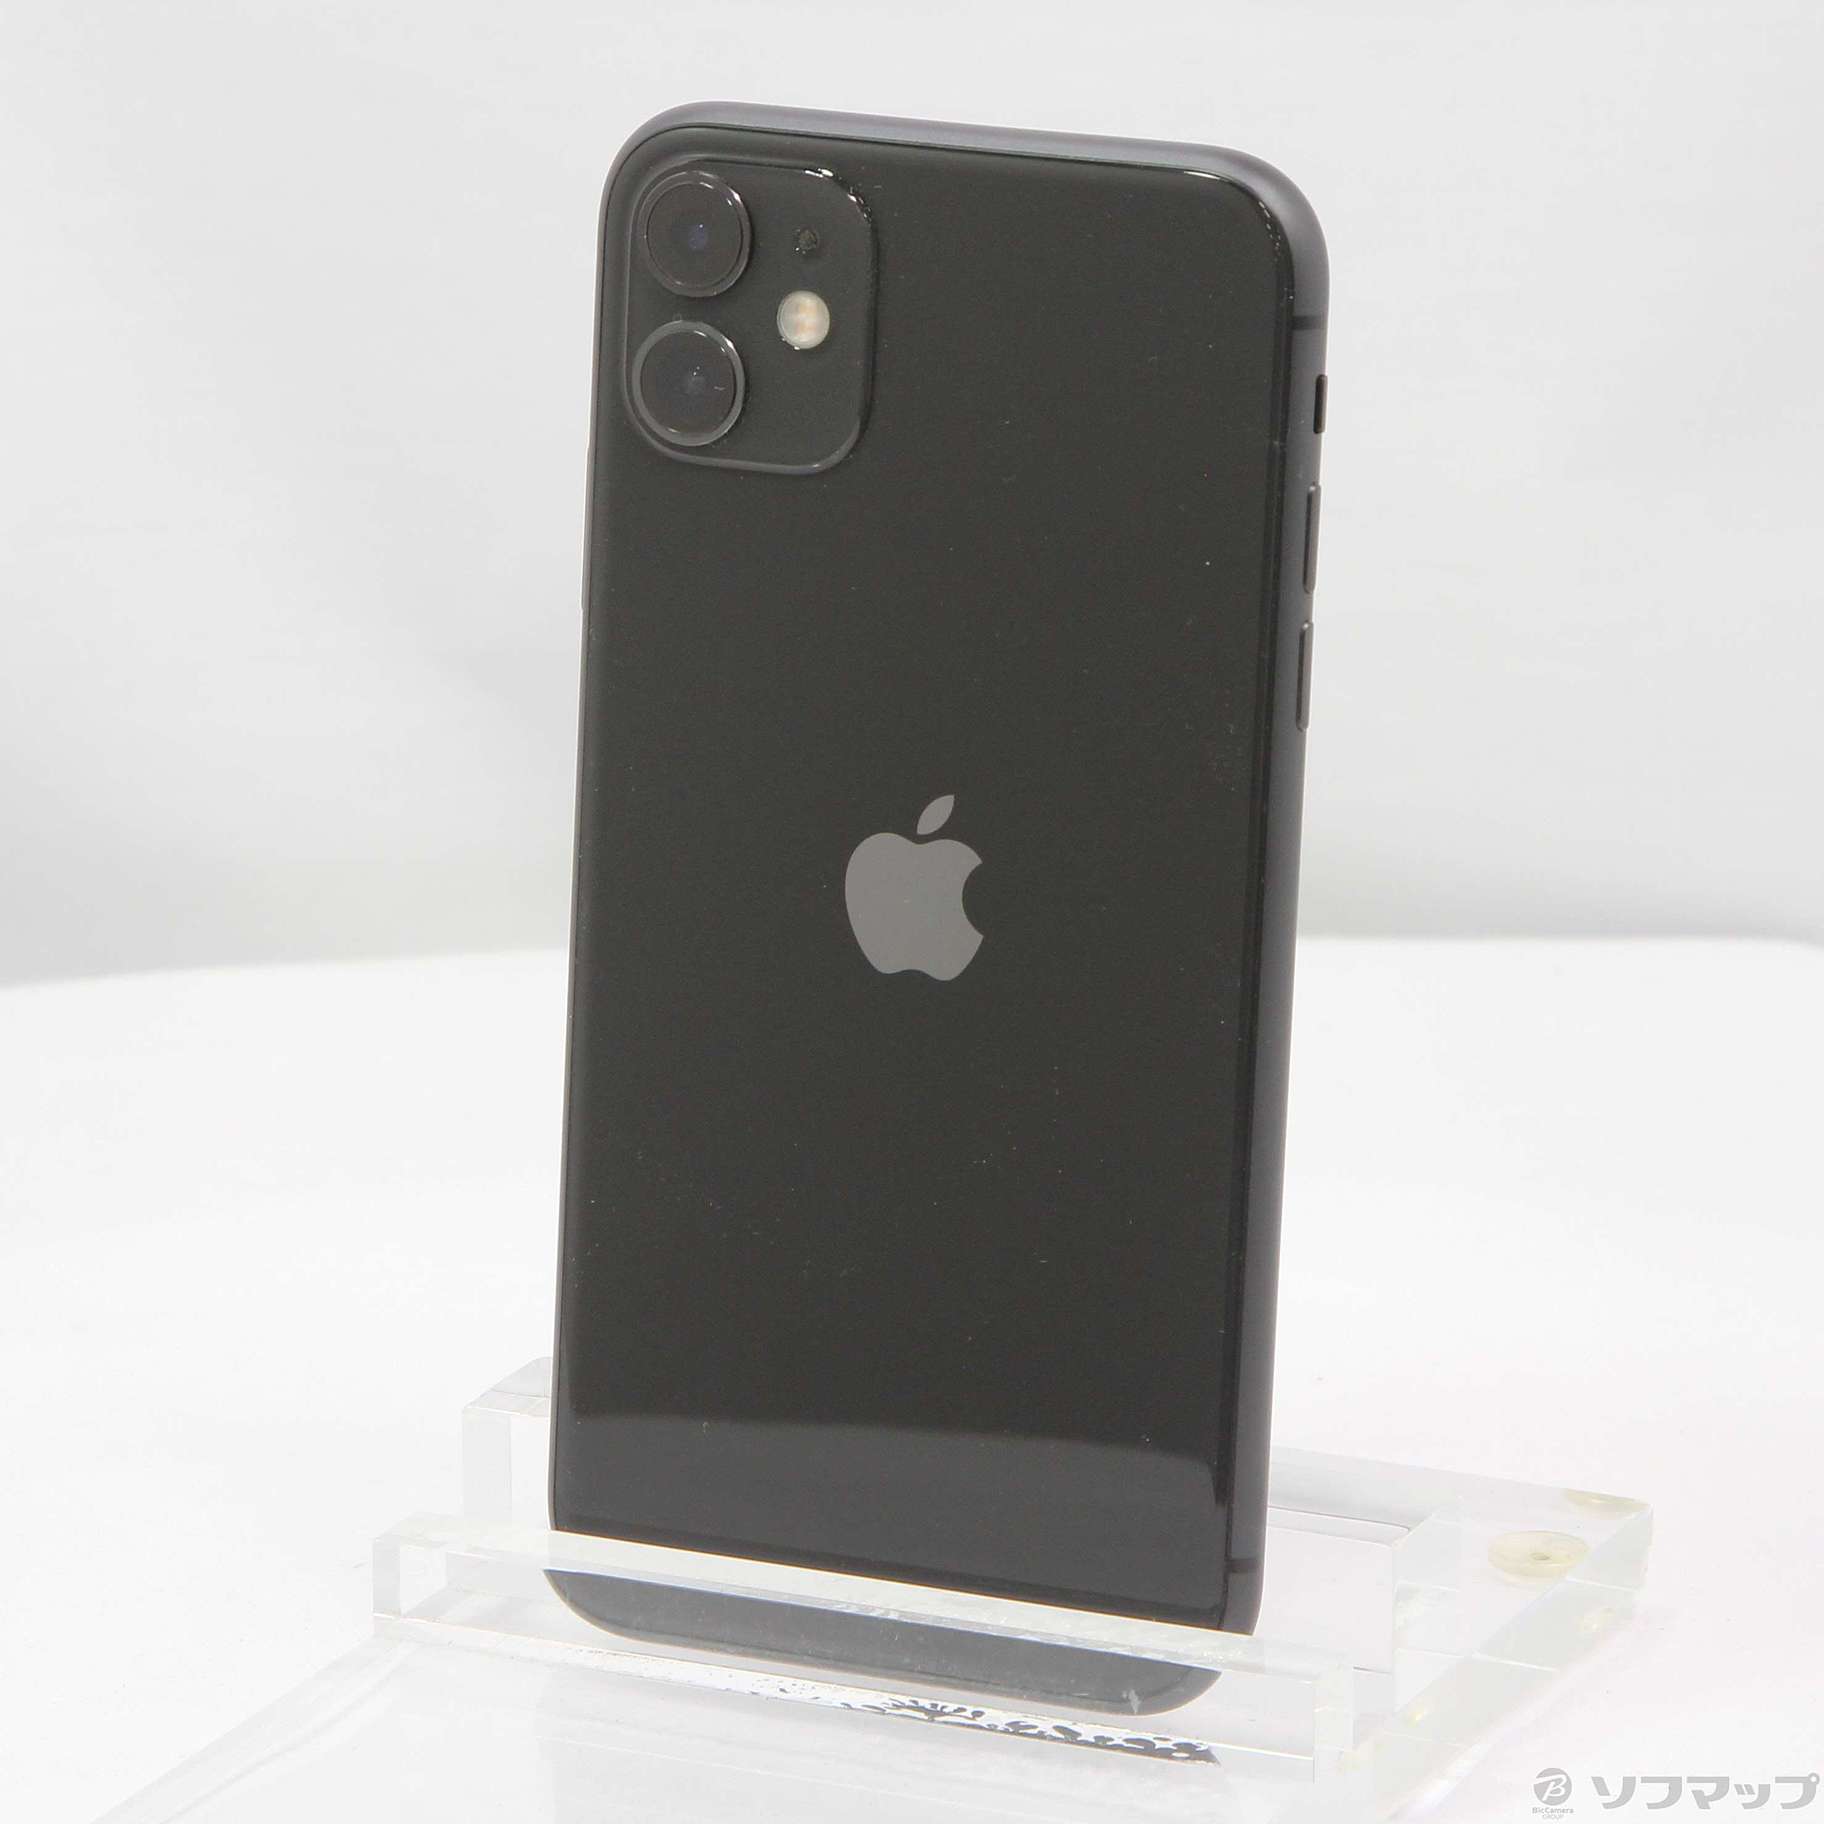 iPhone11 ブラック 128GB修理履歴がありますか - スマートフォン本体